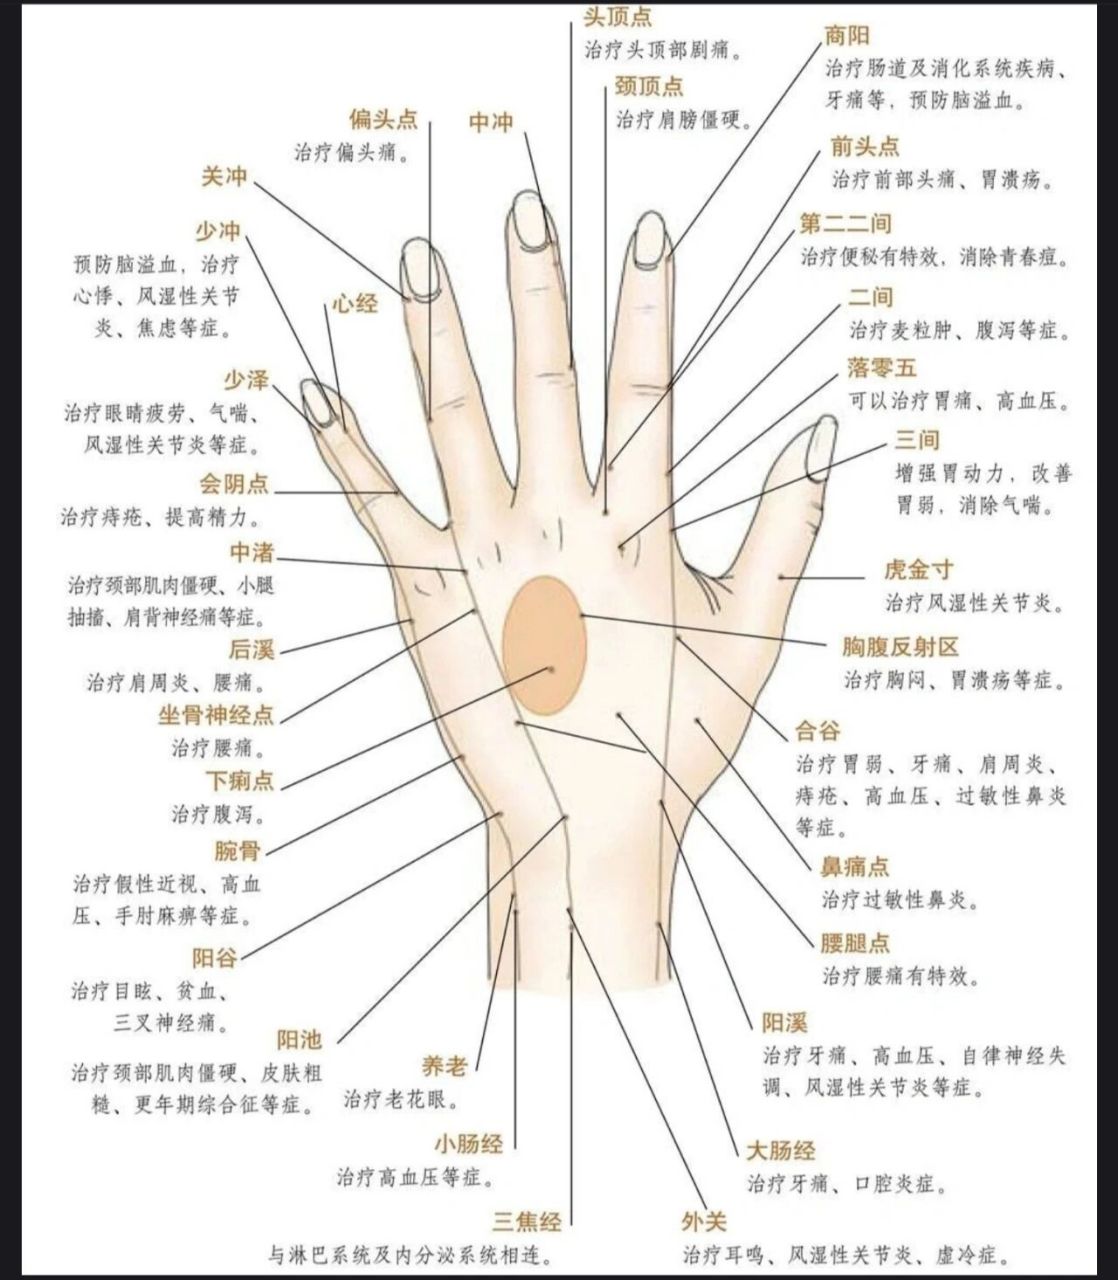 手掌,手背和手心的穴位图解 中医认为, 人的手掌上有心经,肺经和心包